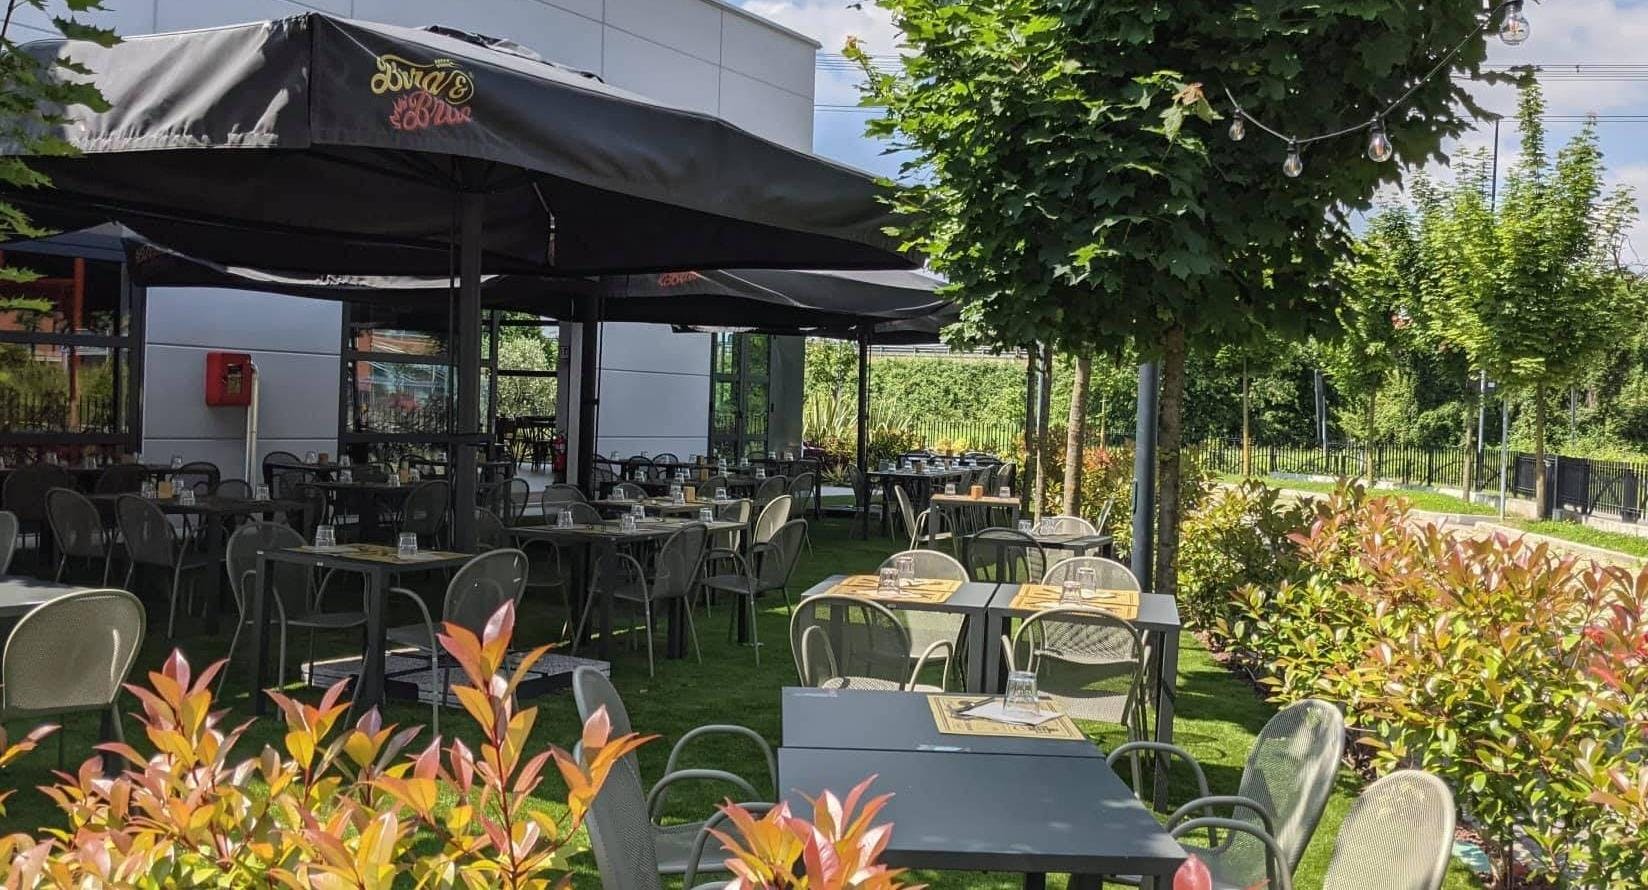 Photo of restaurant Birra & Brace Monza in Monza, Monza and Brianza